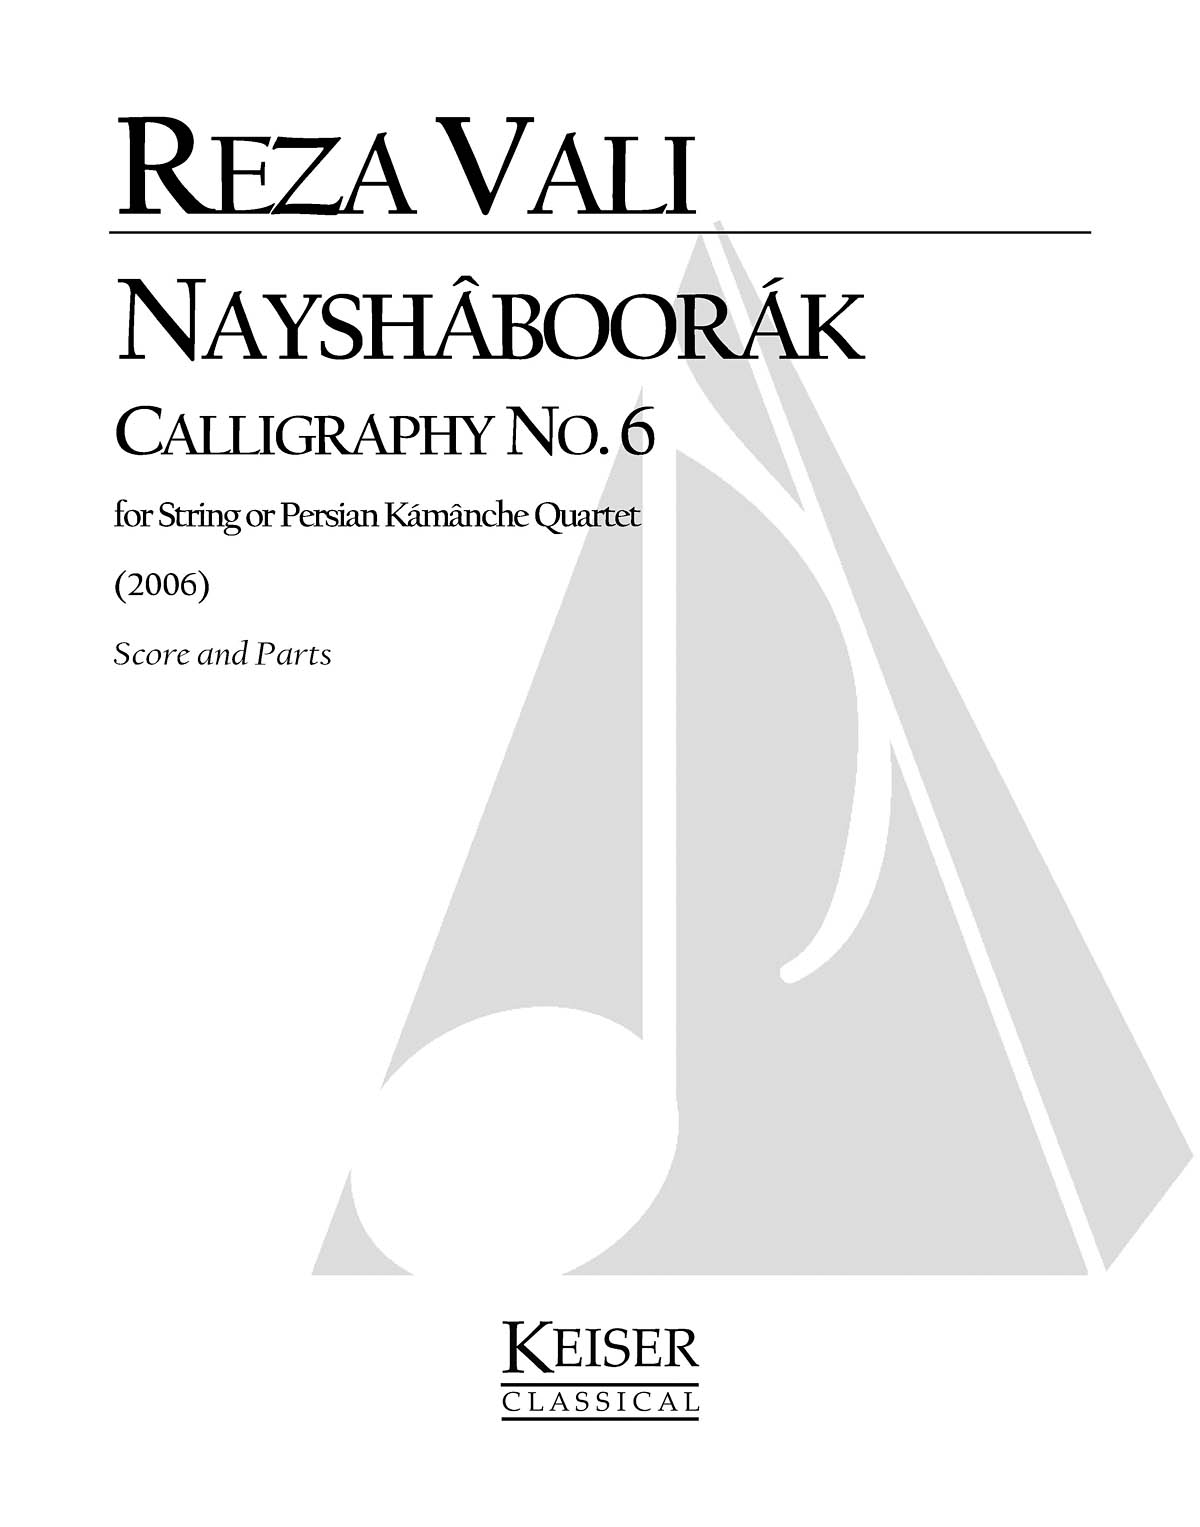 Nayshaboorak: Calligraphy No. 6